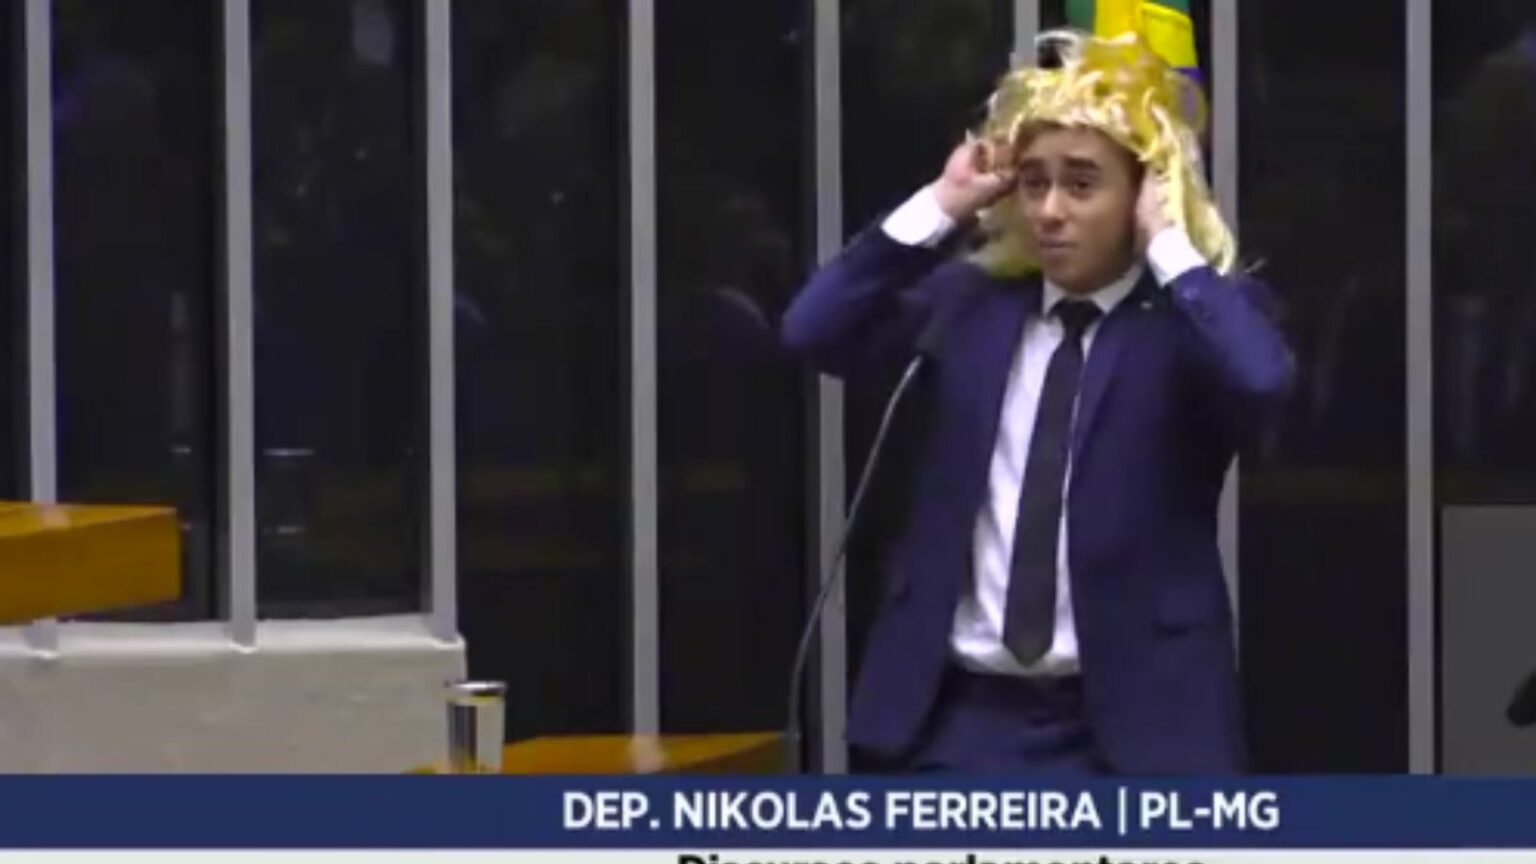 Deputado Federal Nikolas Ferreira, sempre tão profundo quanto um pires